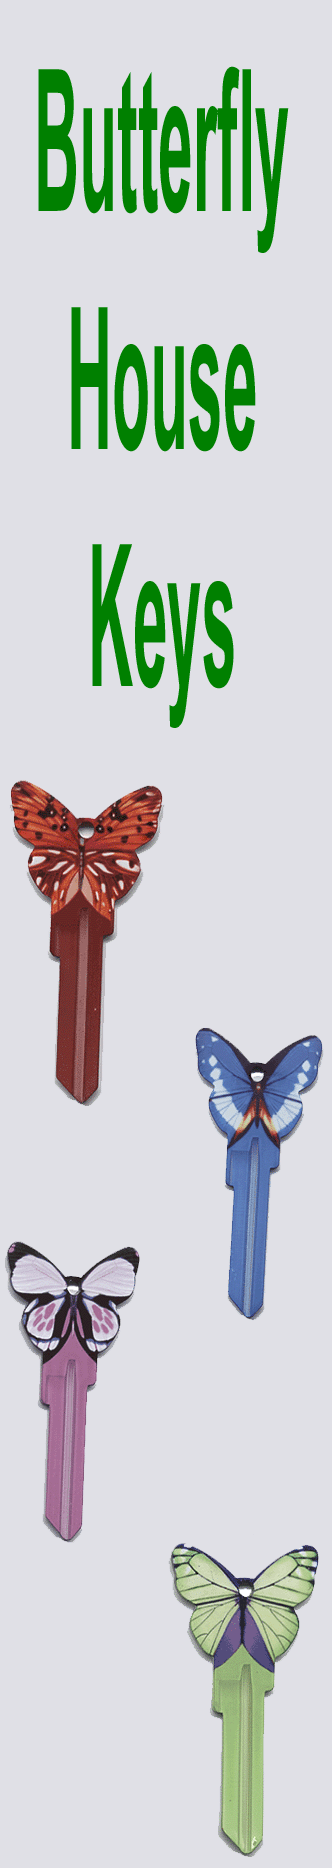 Butterfly House Keys